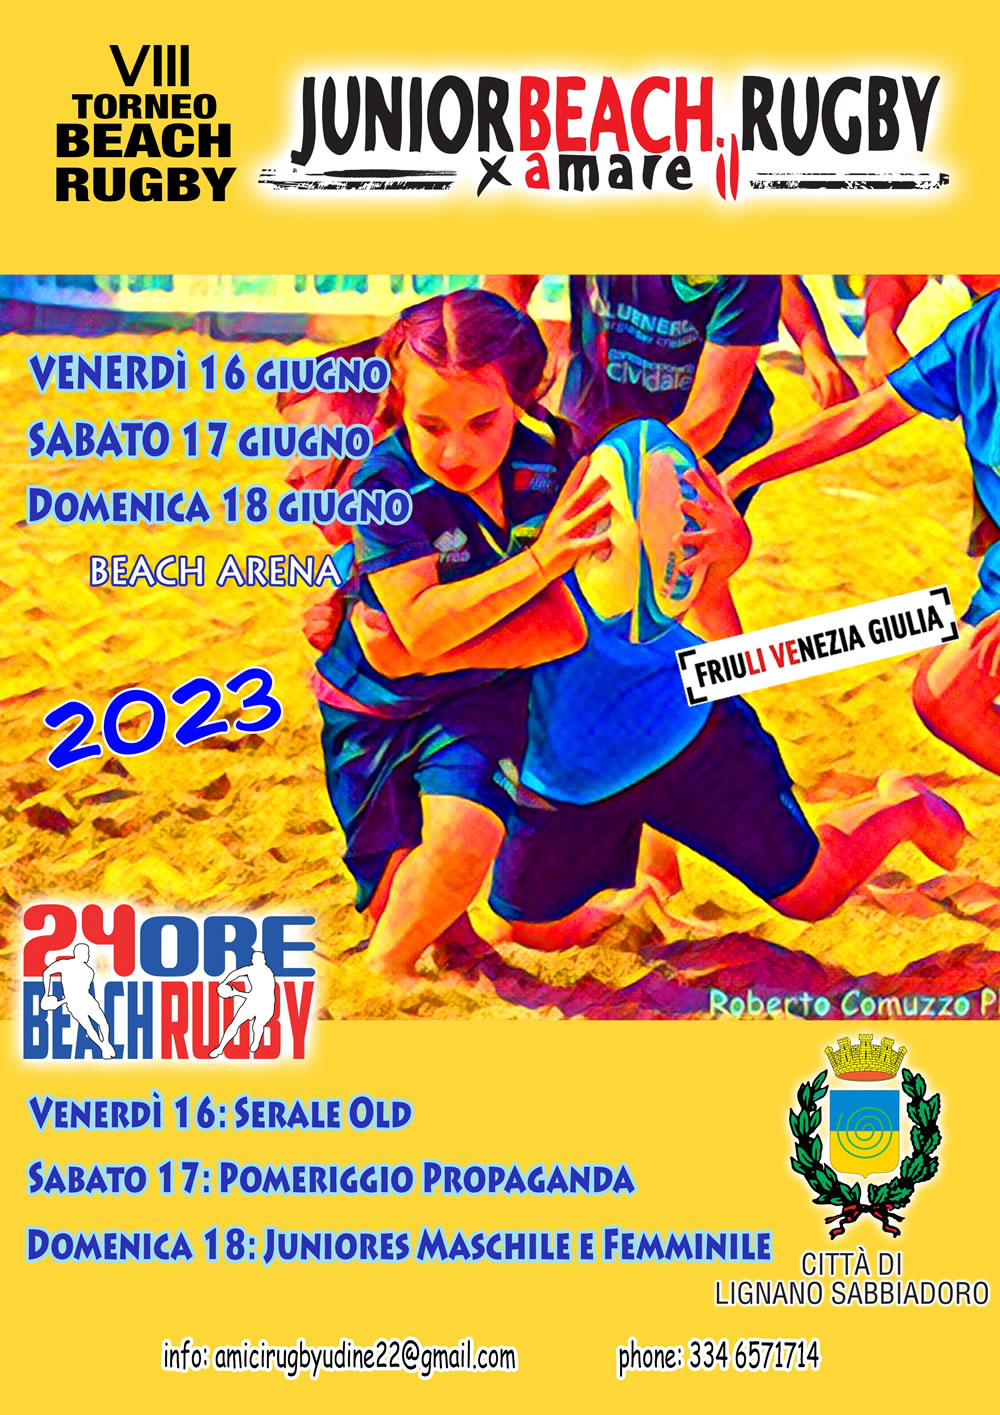 Torneo Junior Beach Rugby 2016